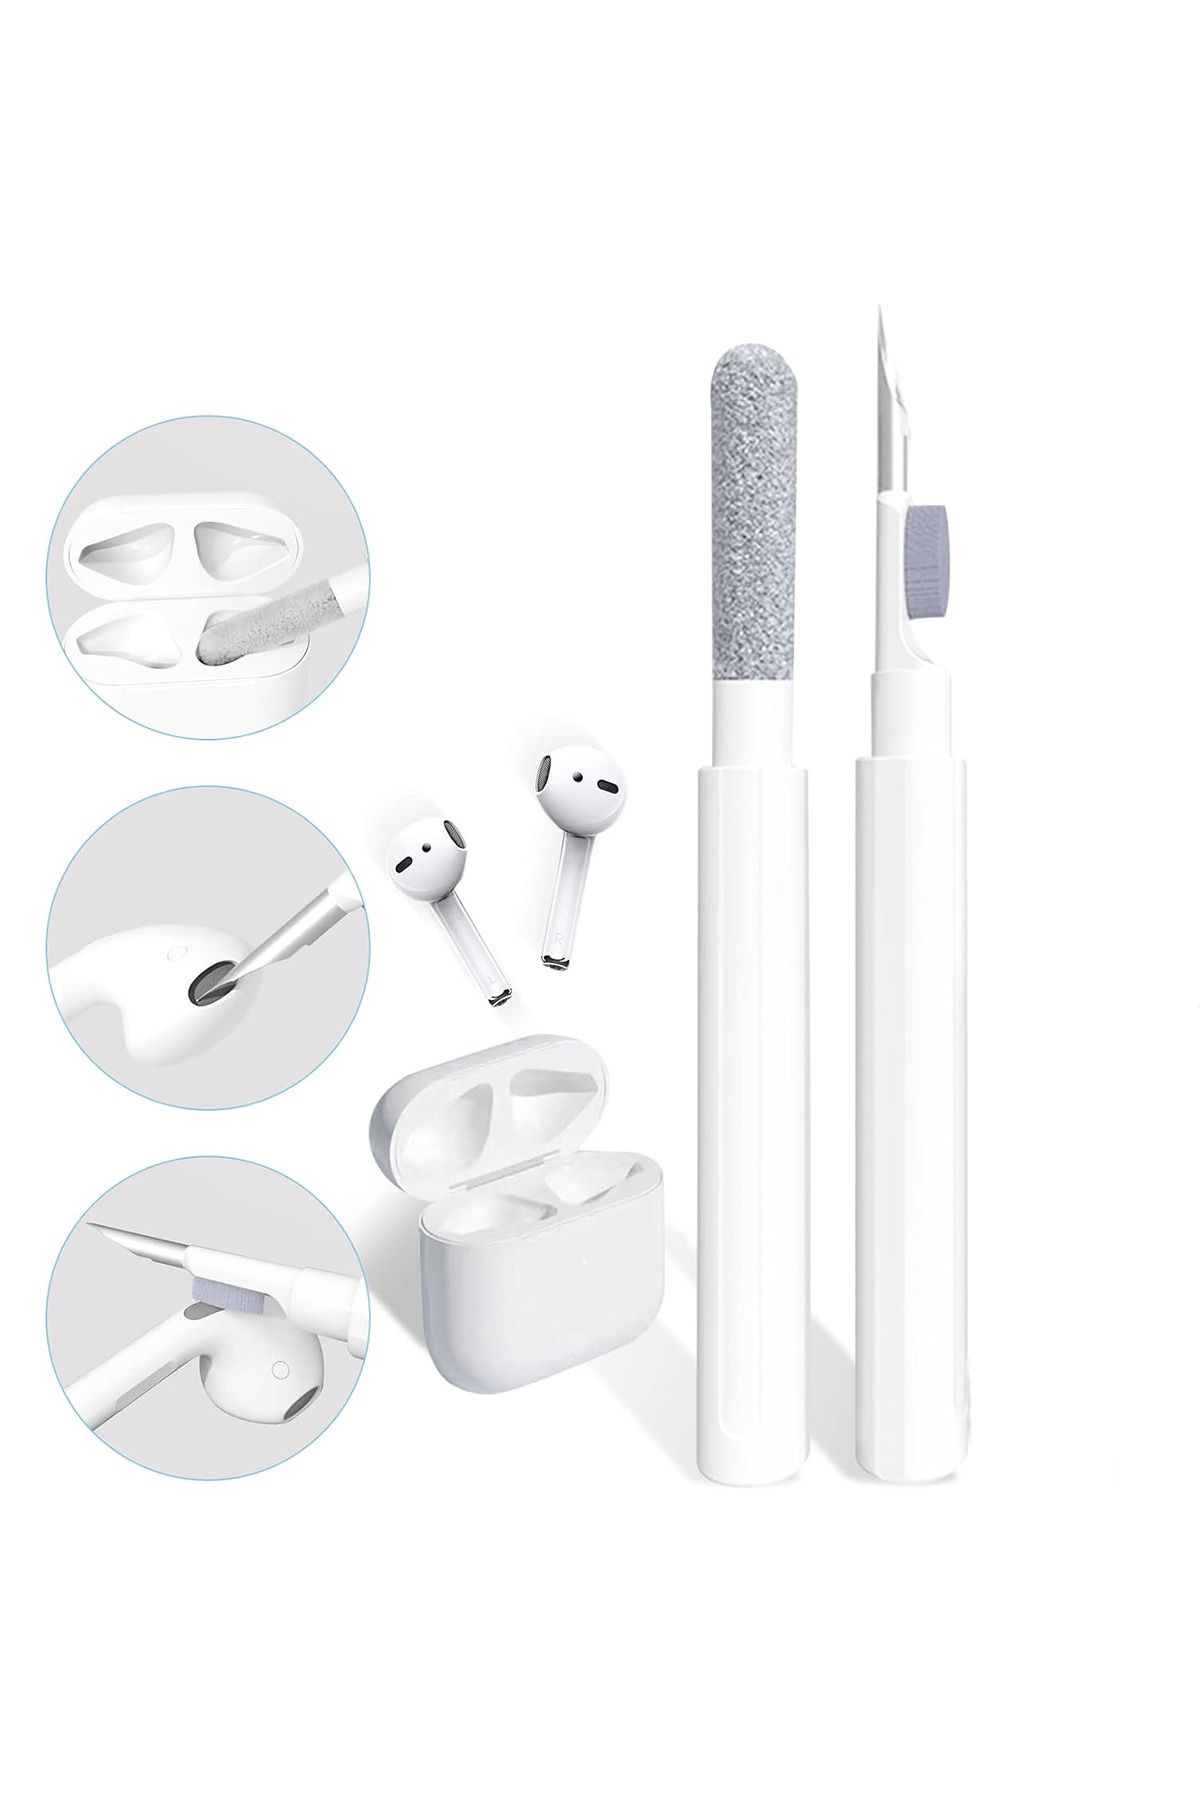 MEZİGARC Bluetooth Kulaklık Temizleme Kalemi Çok Işlevli Pro Temizleyici Kit Yeni Nesil 3in1 Temizleme Aparat